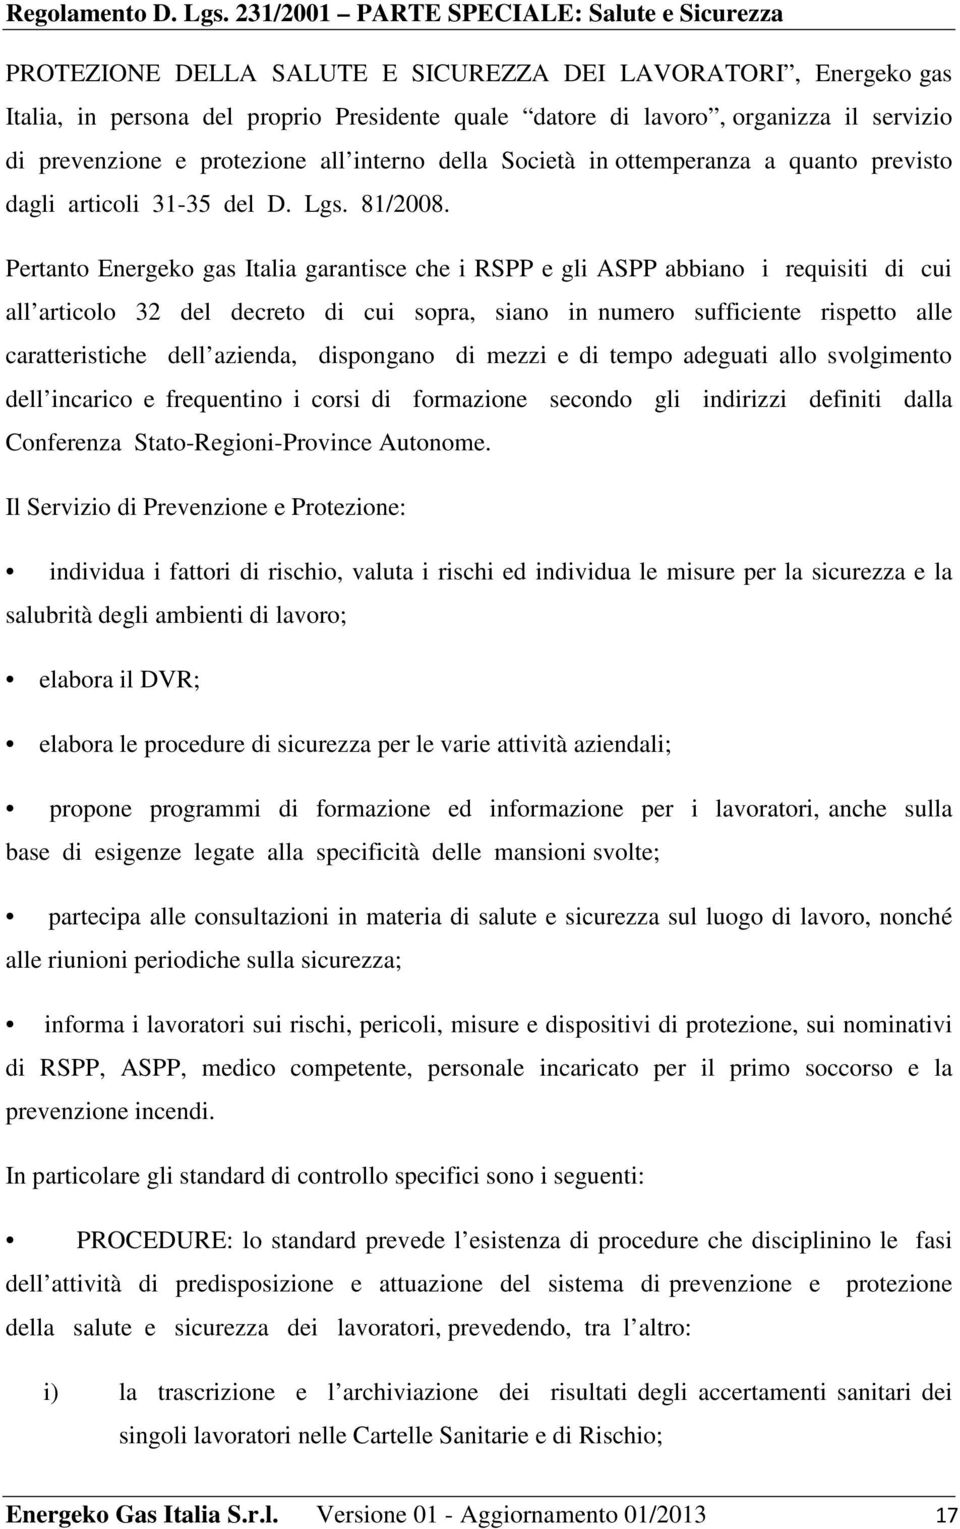 Pertanto Energeko gas Italia garantisce che i RSPP e gli ASPP abbiano i requisiti di cui all articolo 32 del decreto di cui sopra, siano in numero sufficiente rispetto alle caratteristiche dell